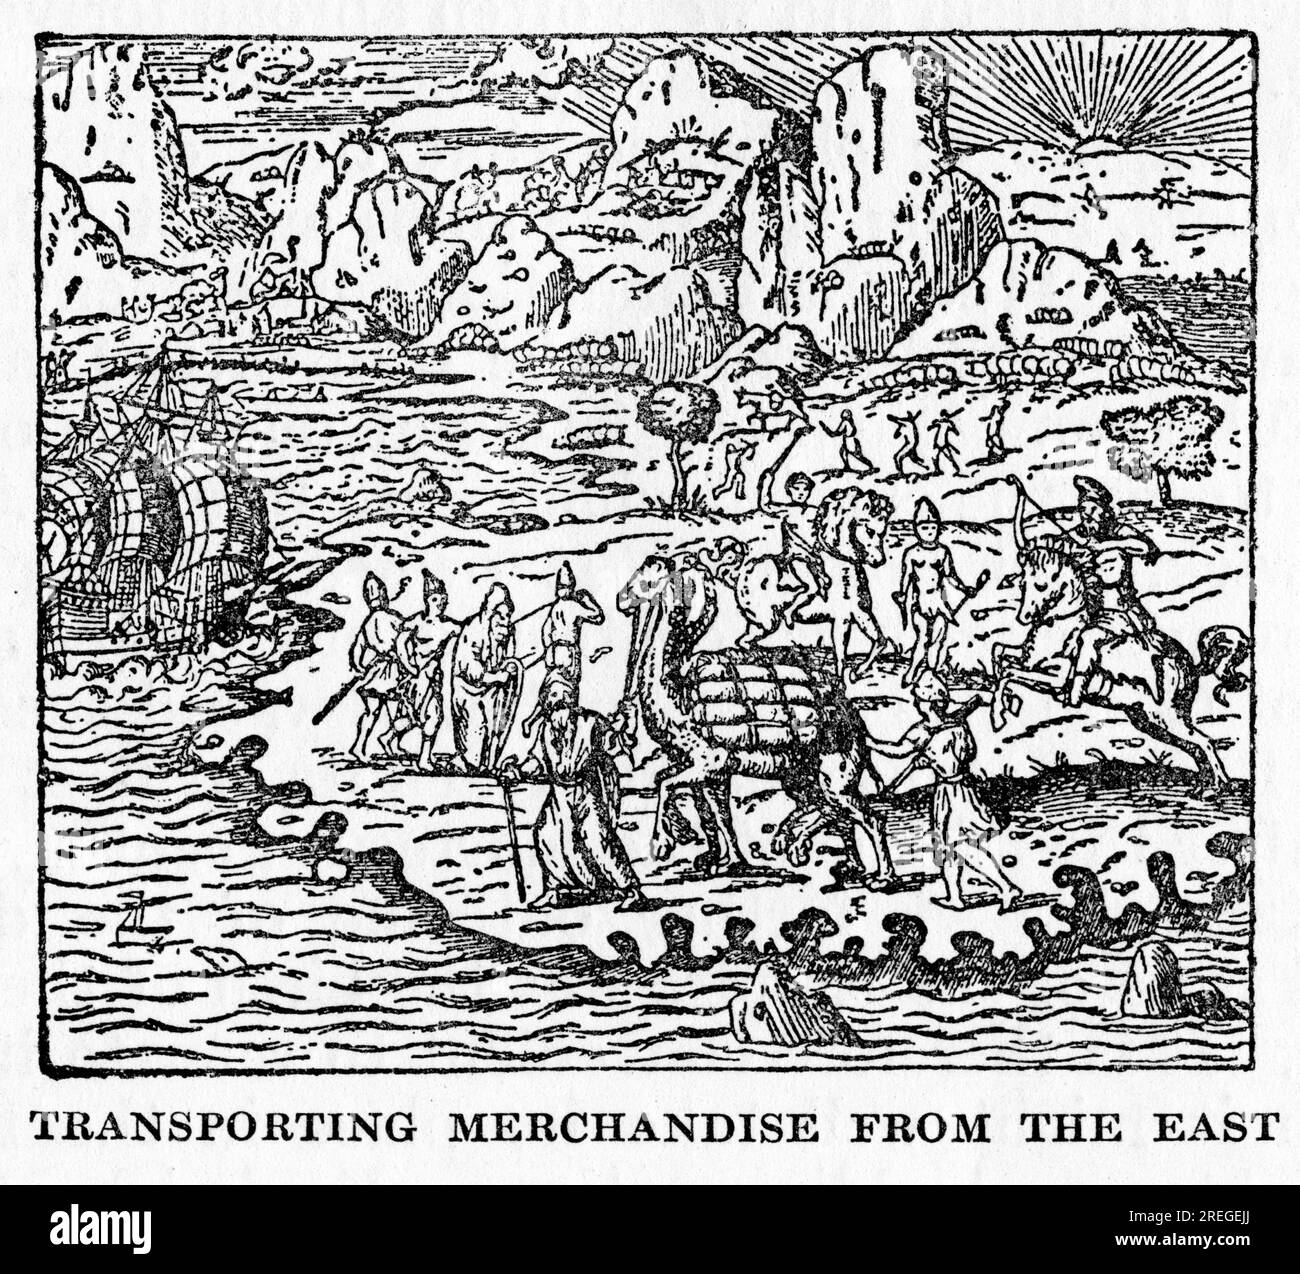 gravure sur bois de marchands transportant des marchandises vers l'est au moyen âge Banque D'Images